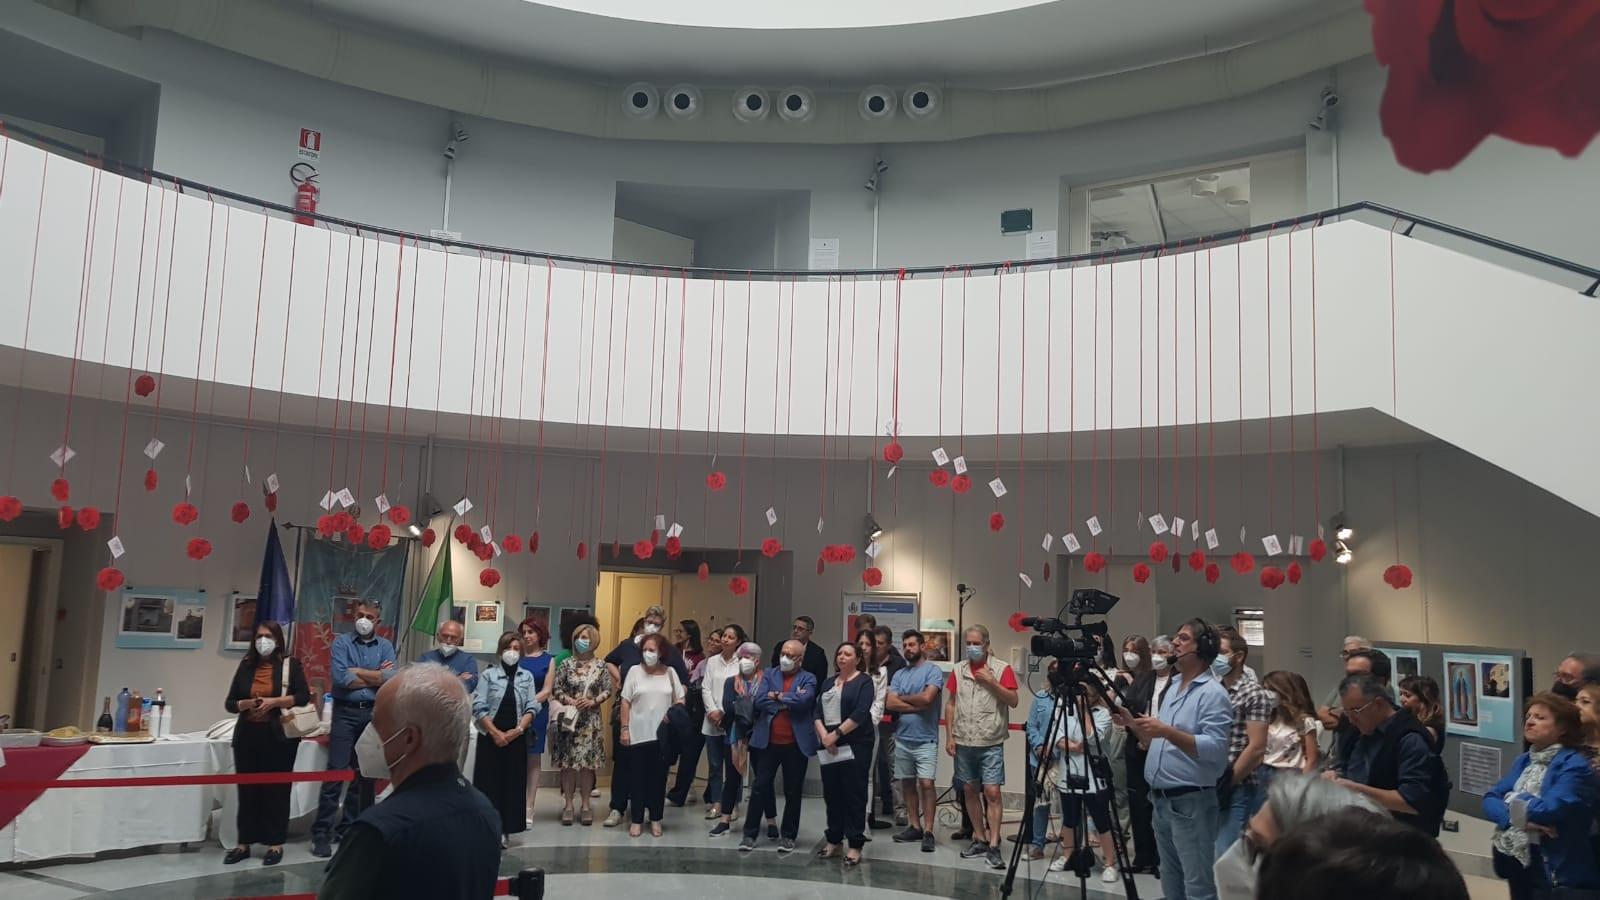 Caronno Pertusella: la diversità attraverso l’arte, inaugurato il mosaico in municipio